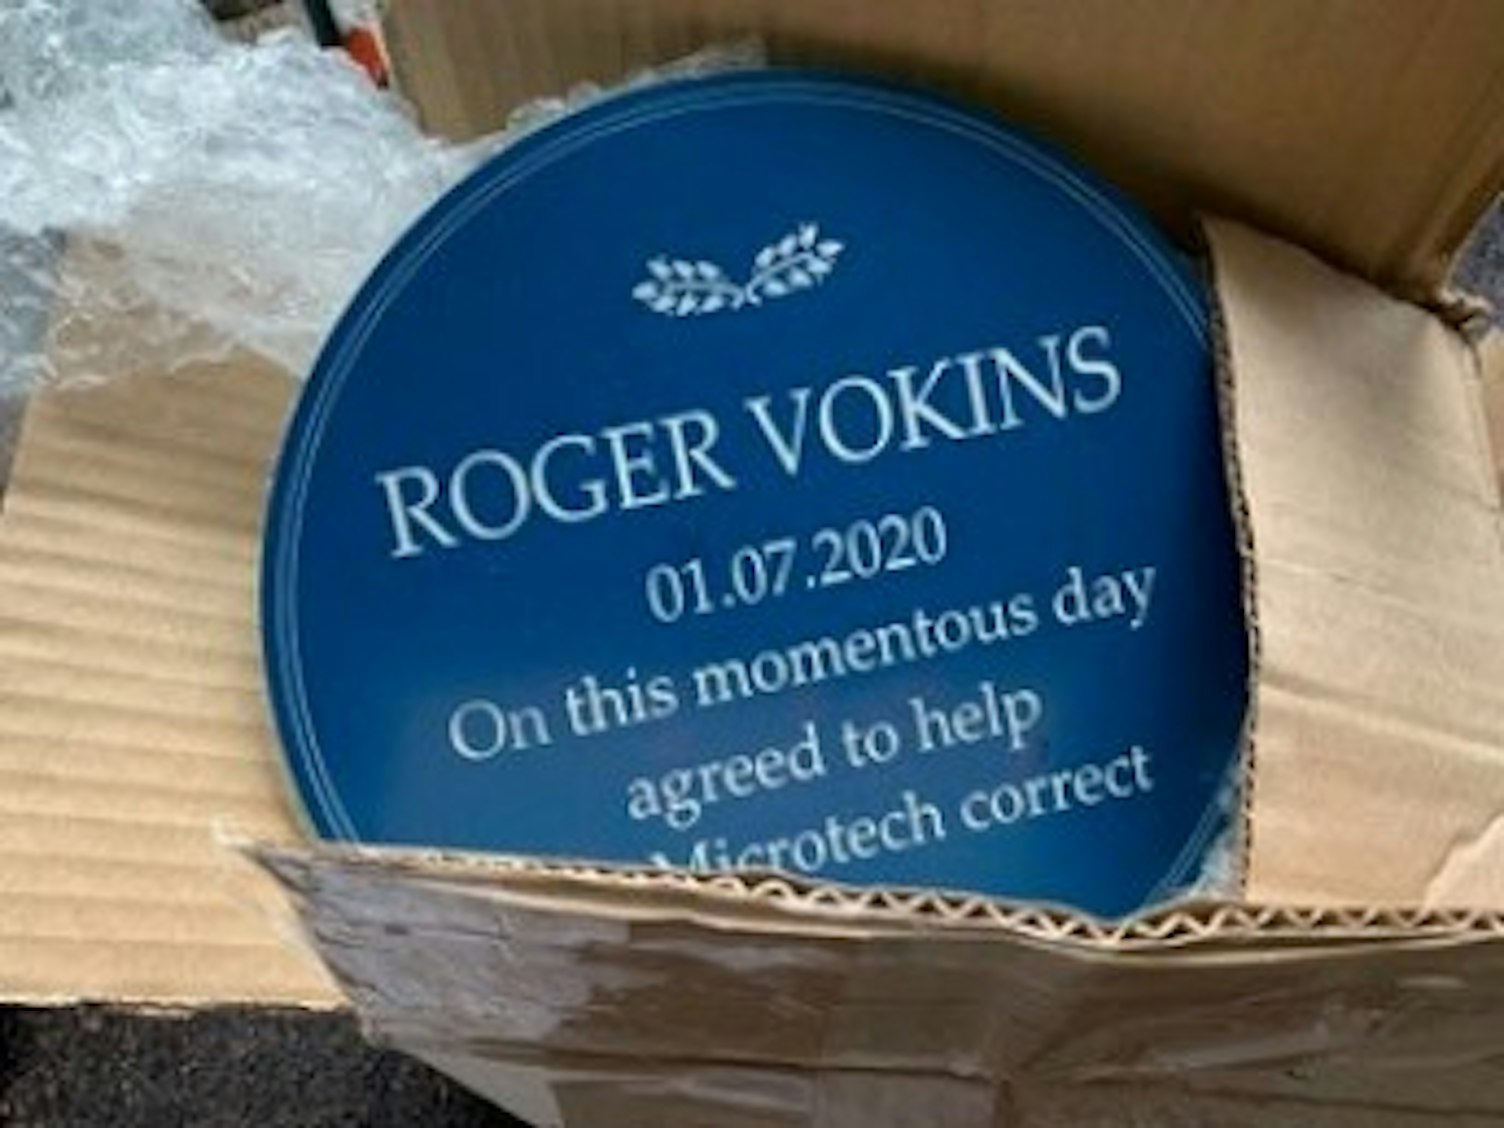 Roger Vokins Award